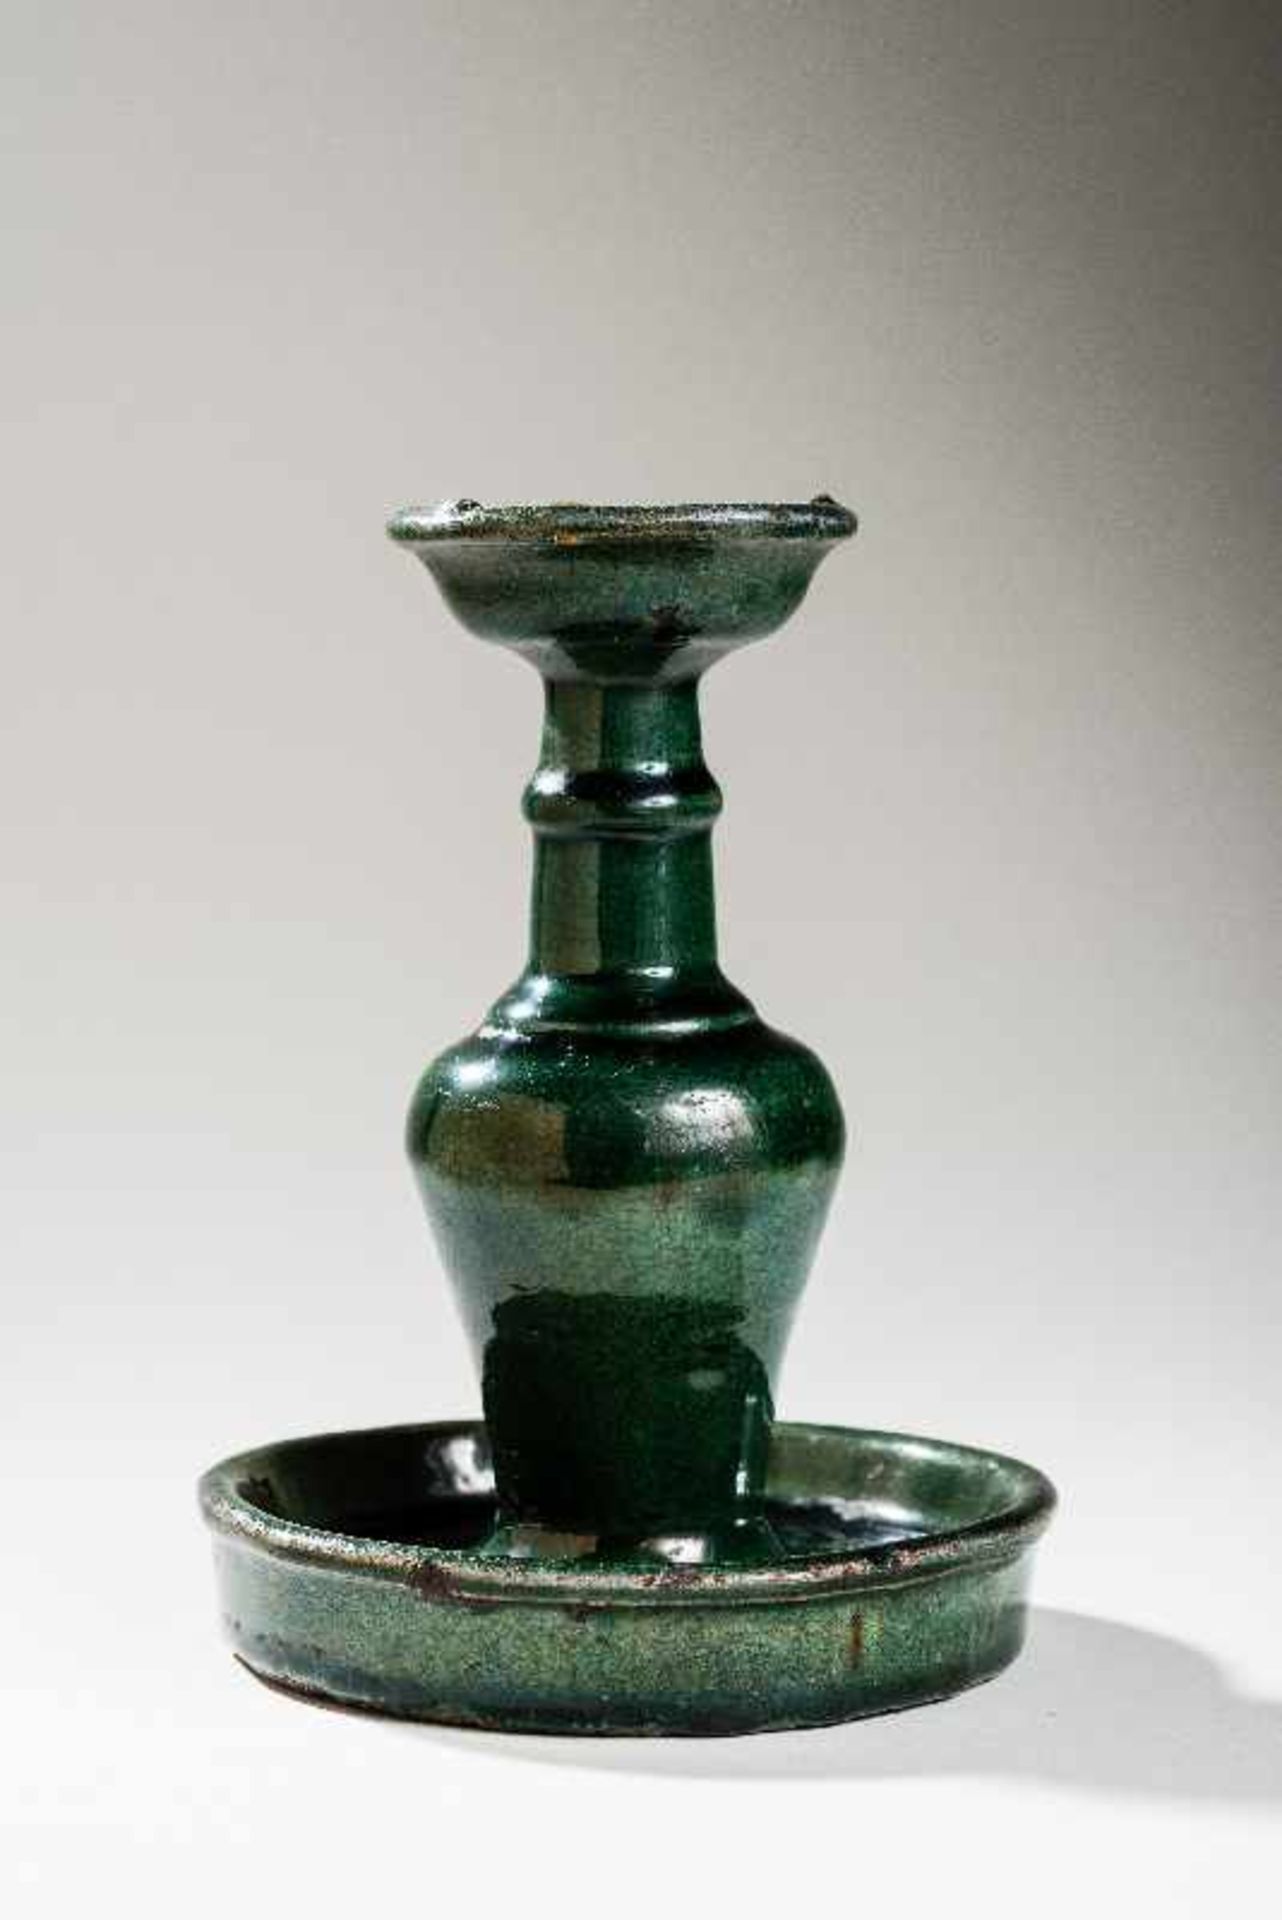 KERZENLEUCHTERGlasiertes Steinzeug. China, Qing-Dynastie, ca. 18. -19. Jh. Breiter